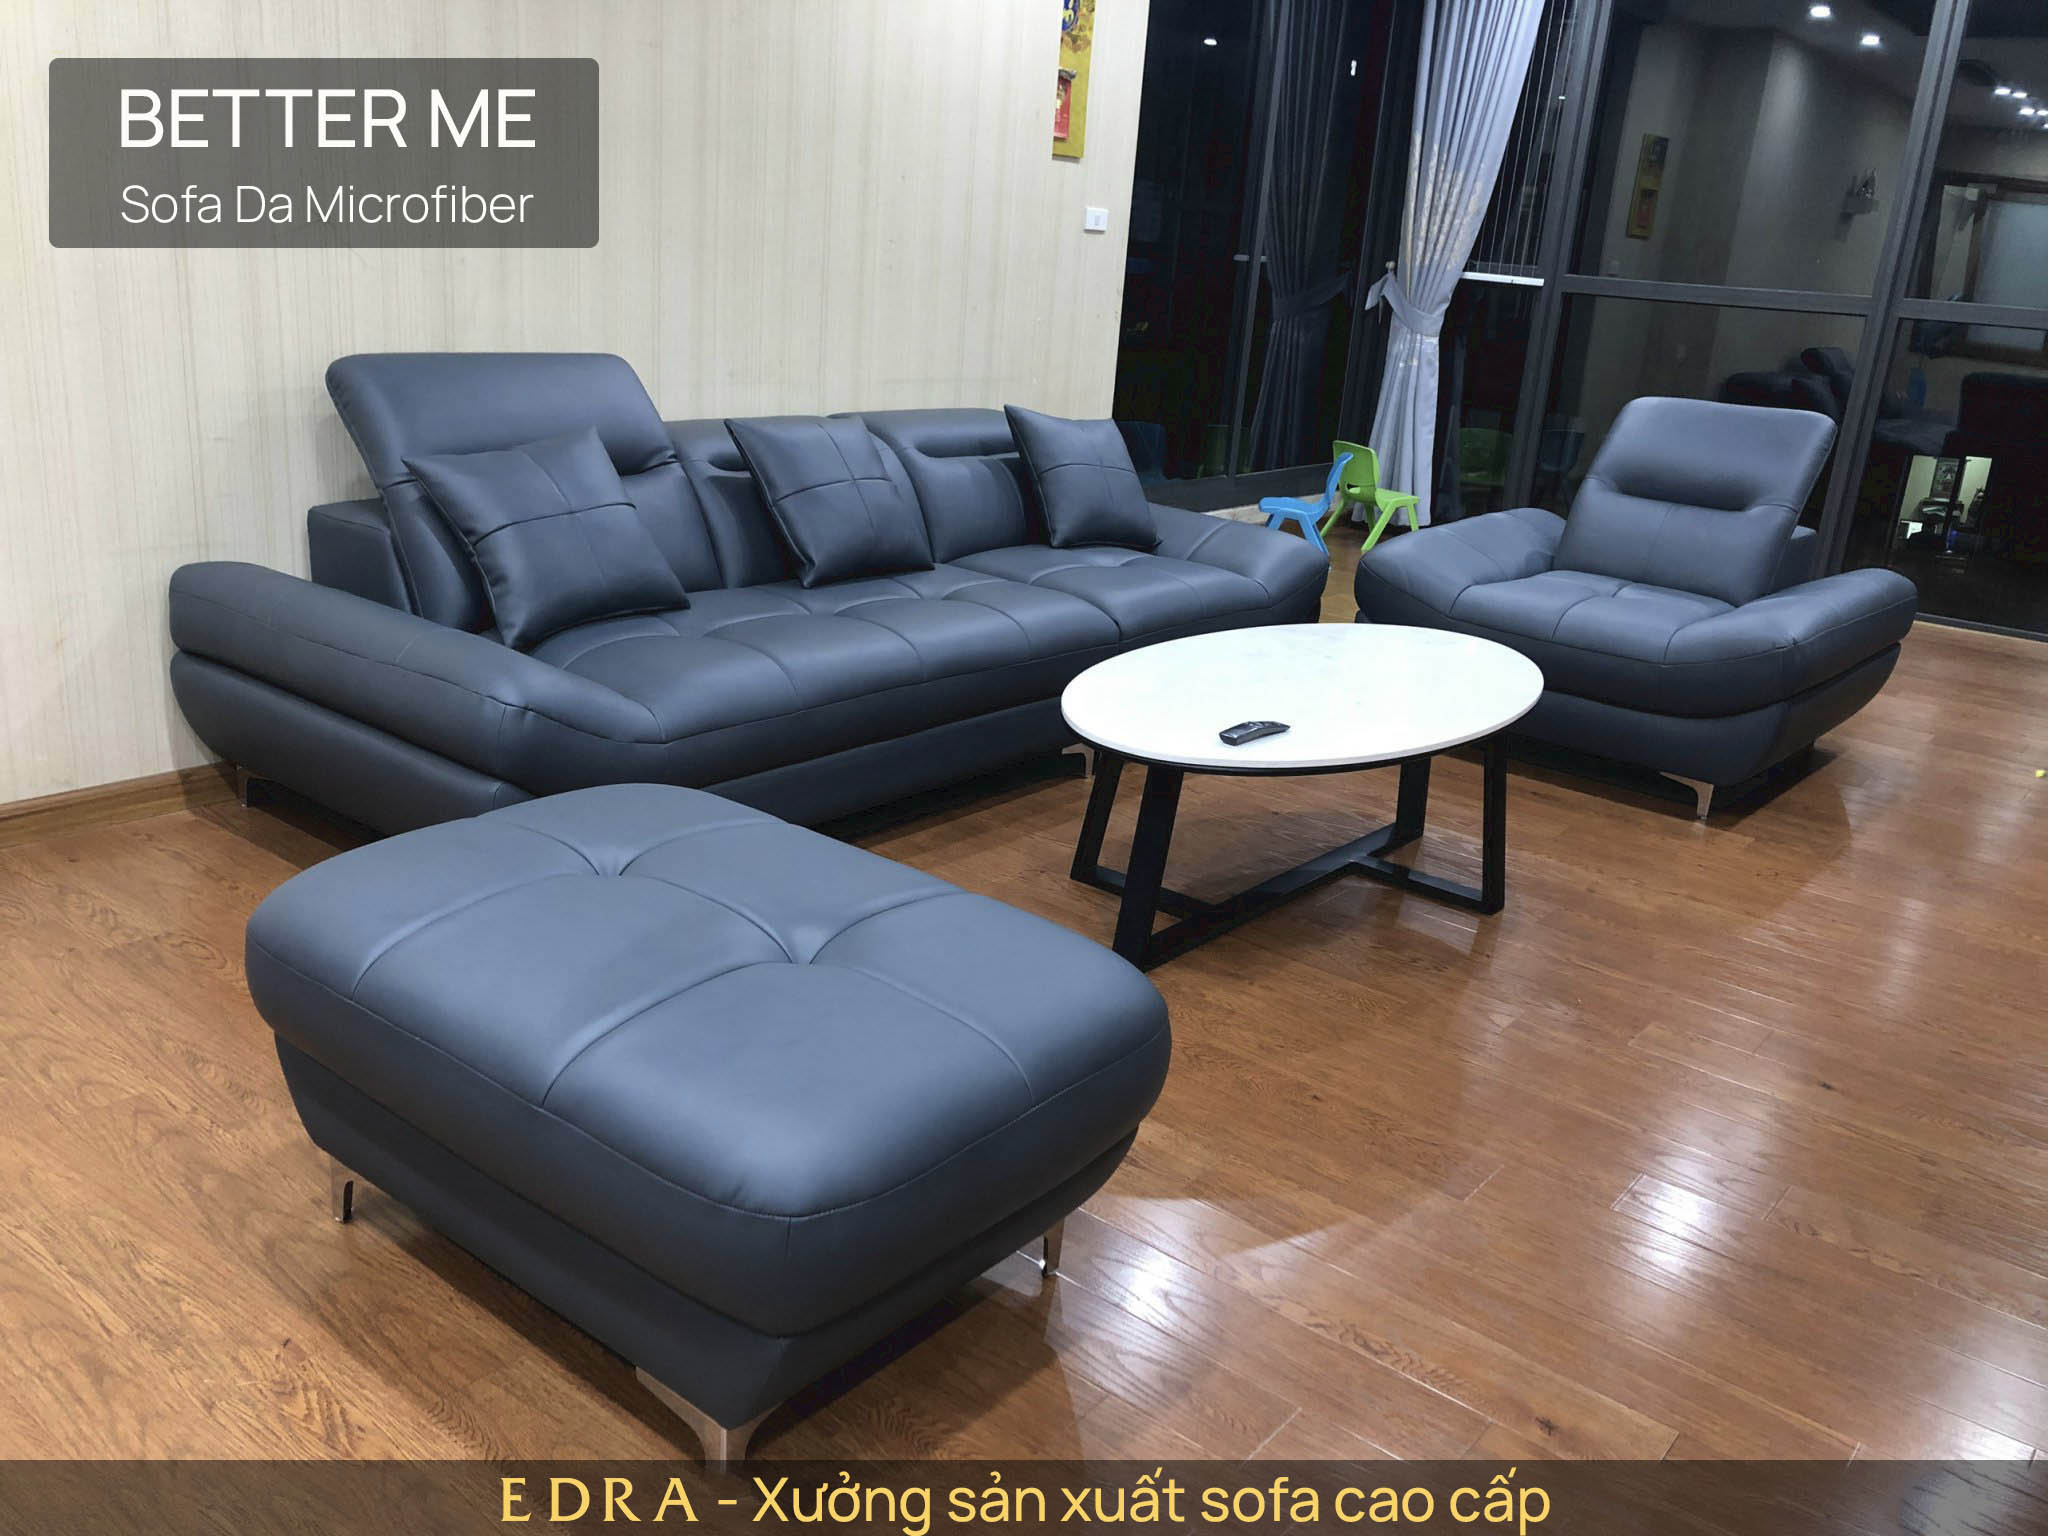 Xưởng sofa EDRA bàn giao bộ sofa Better Me cho gia đình chị Hoa - Hà Đông